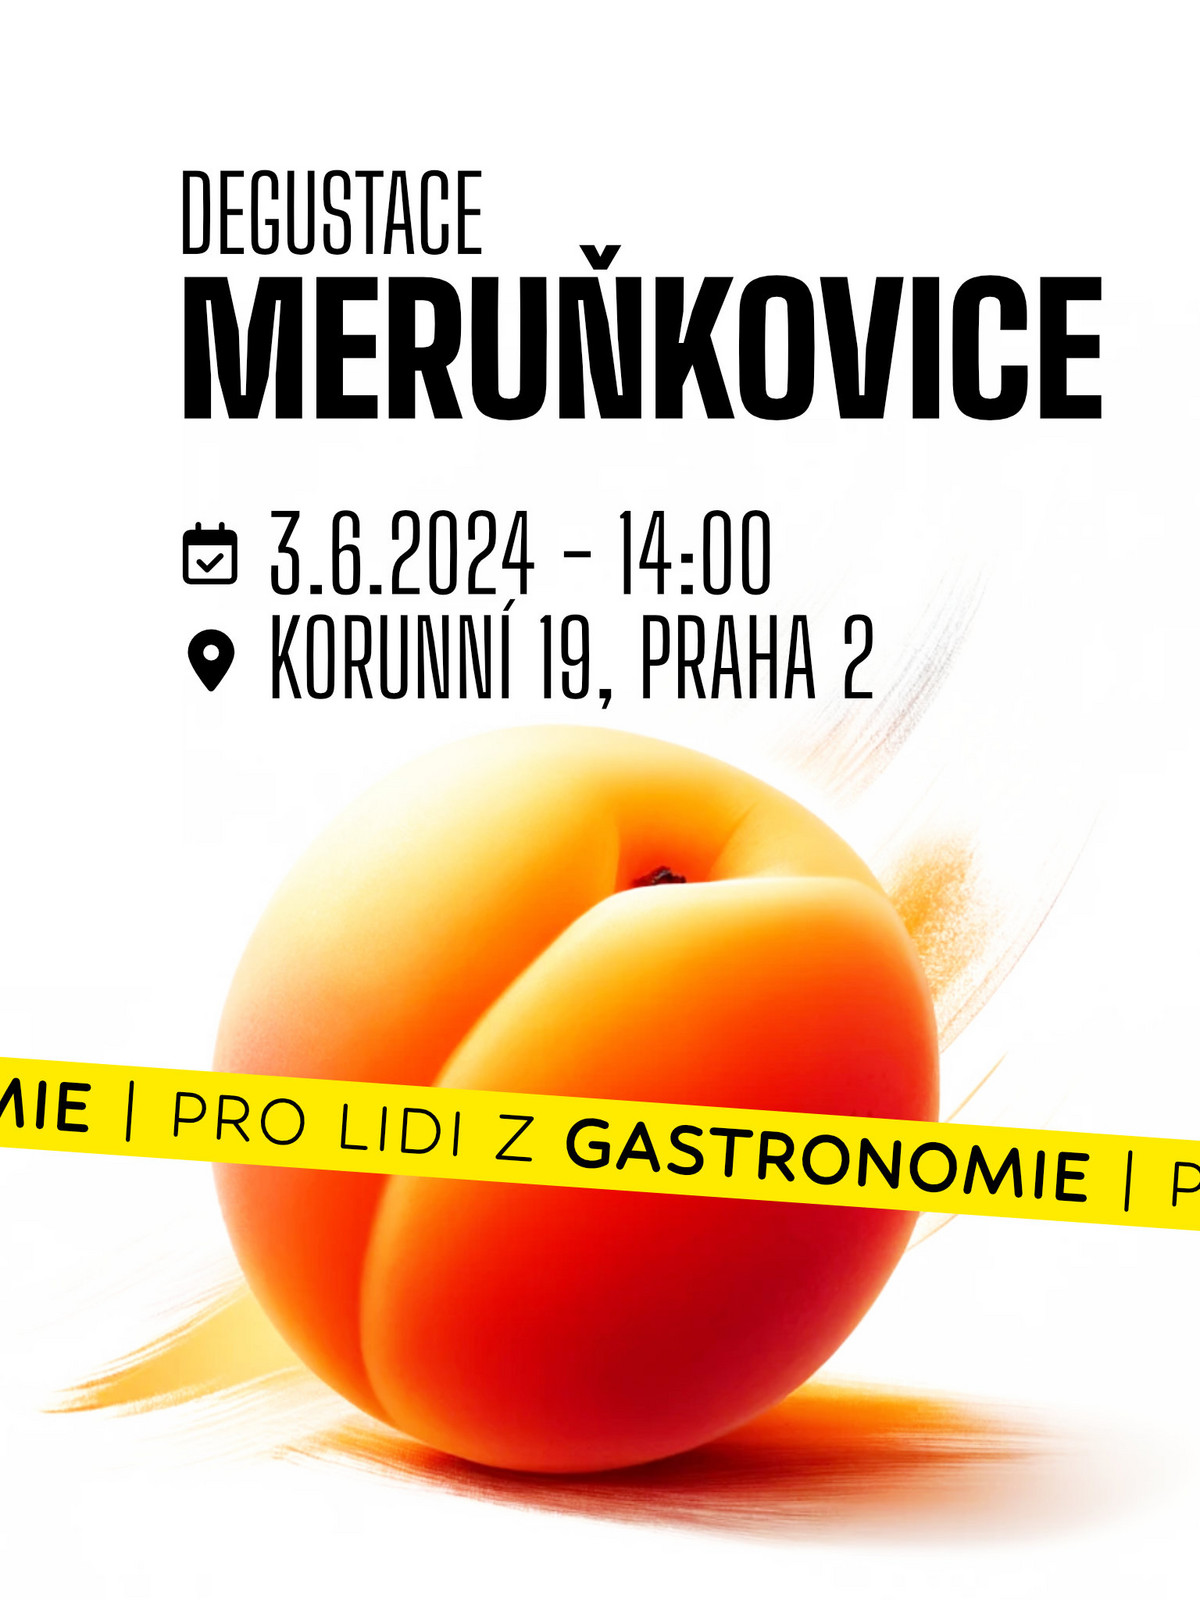 Lihovarek.cz  3|6 - Degustace Meruňkovic (pro gastronomii)